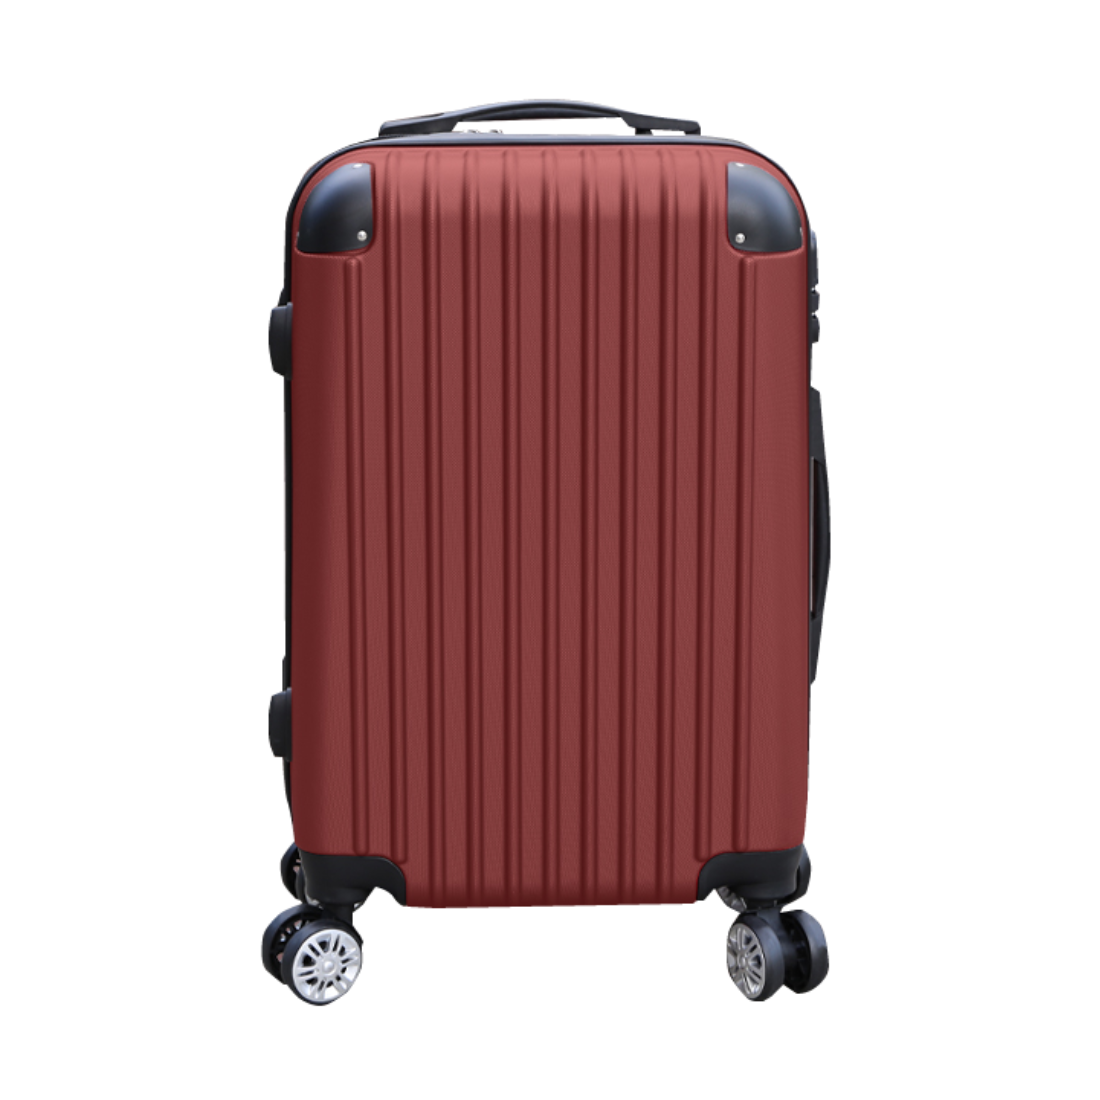 スーツケース Lサイズ 軽量 キャリー 旅行カバン ダブル キャスター